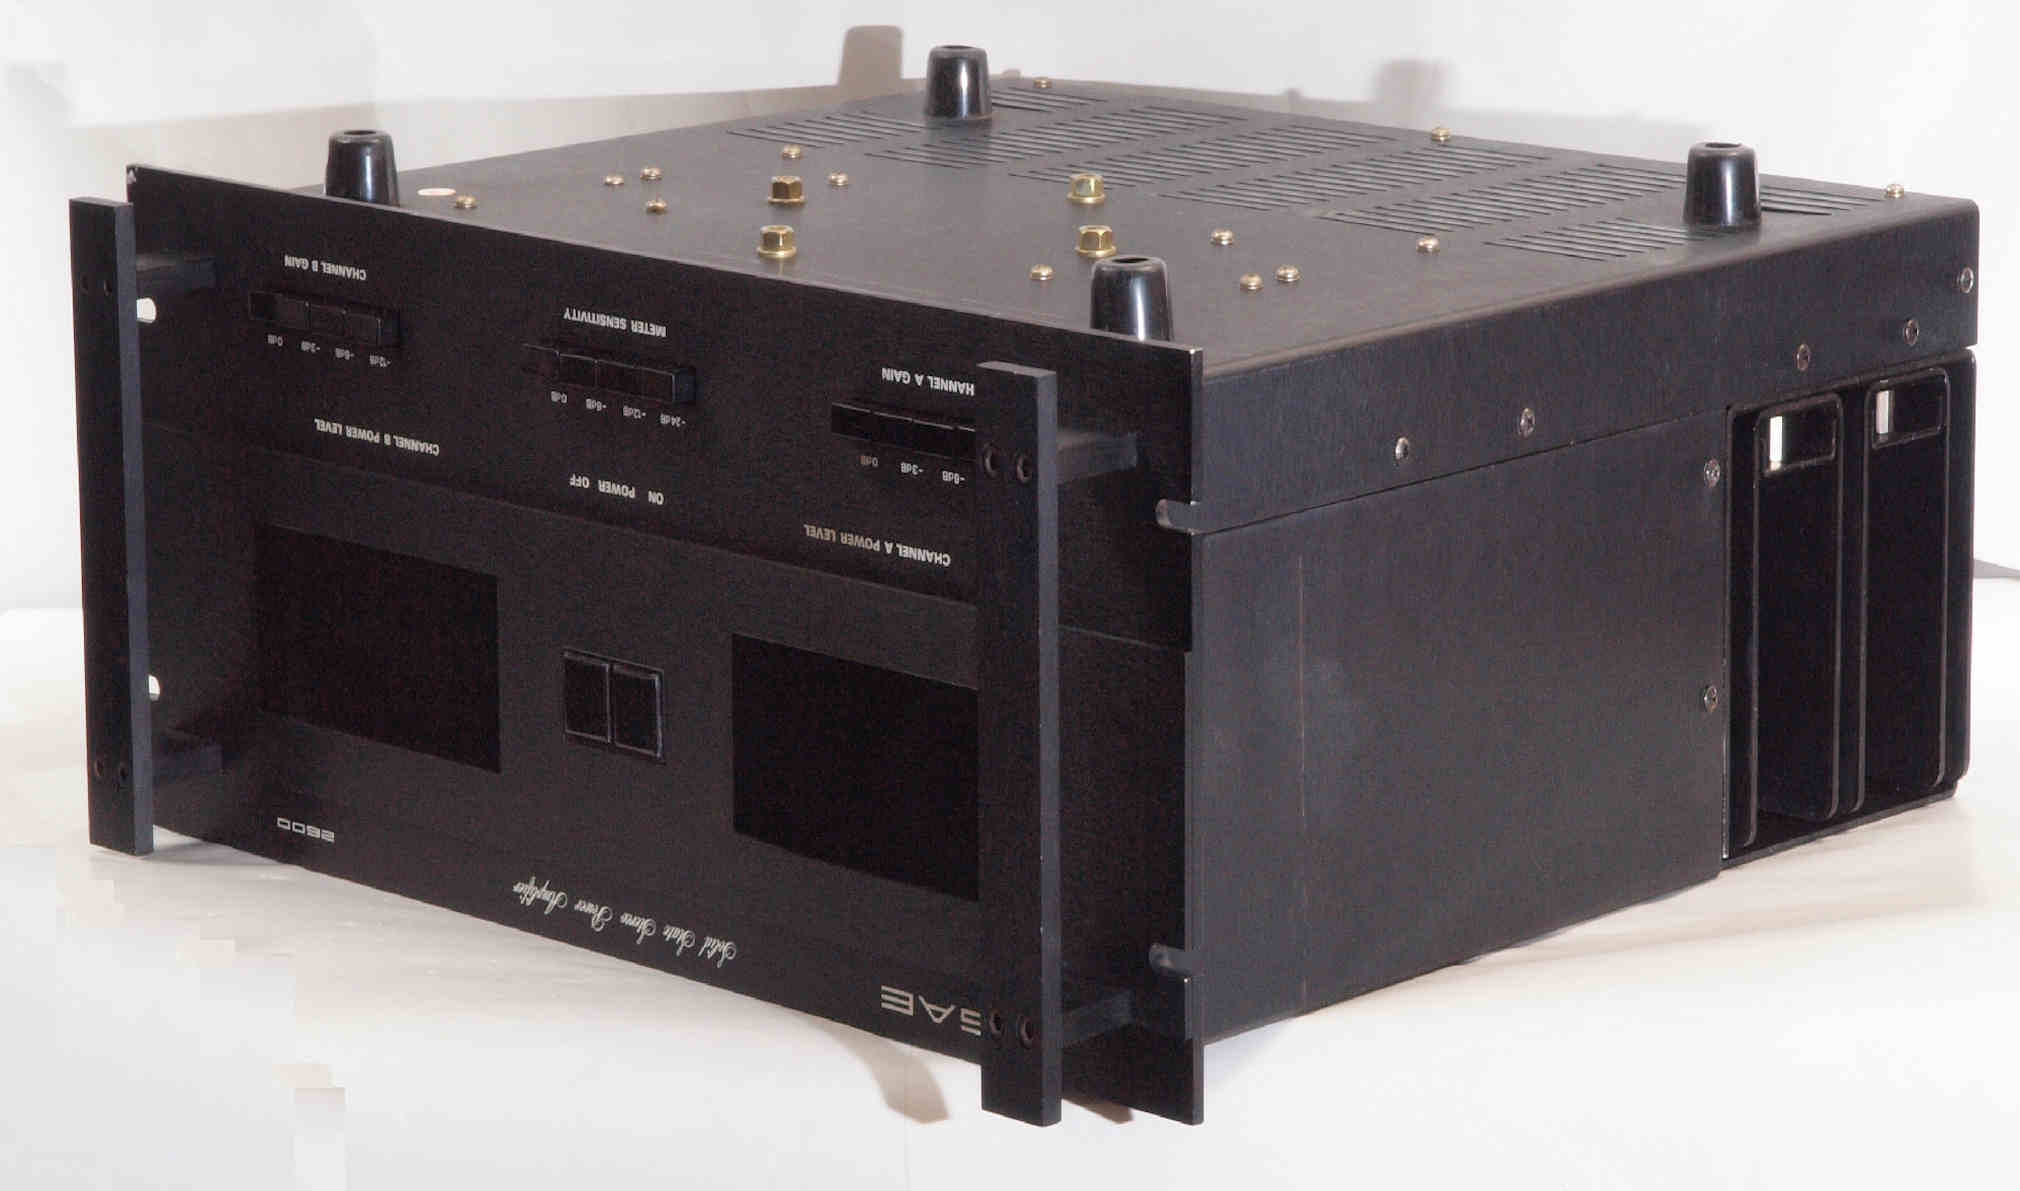 Scientific Audio Electronics mark 2600 後期型